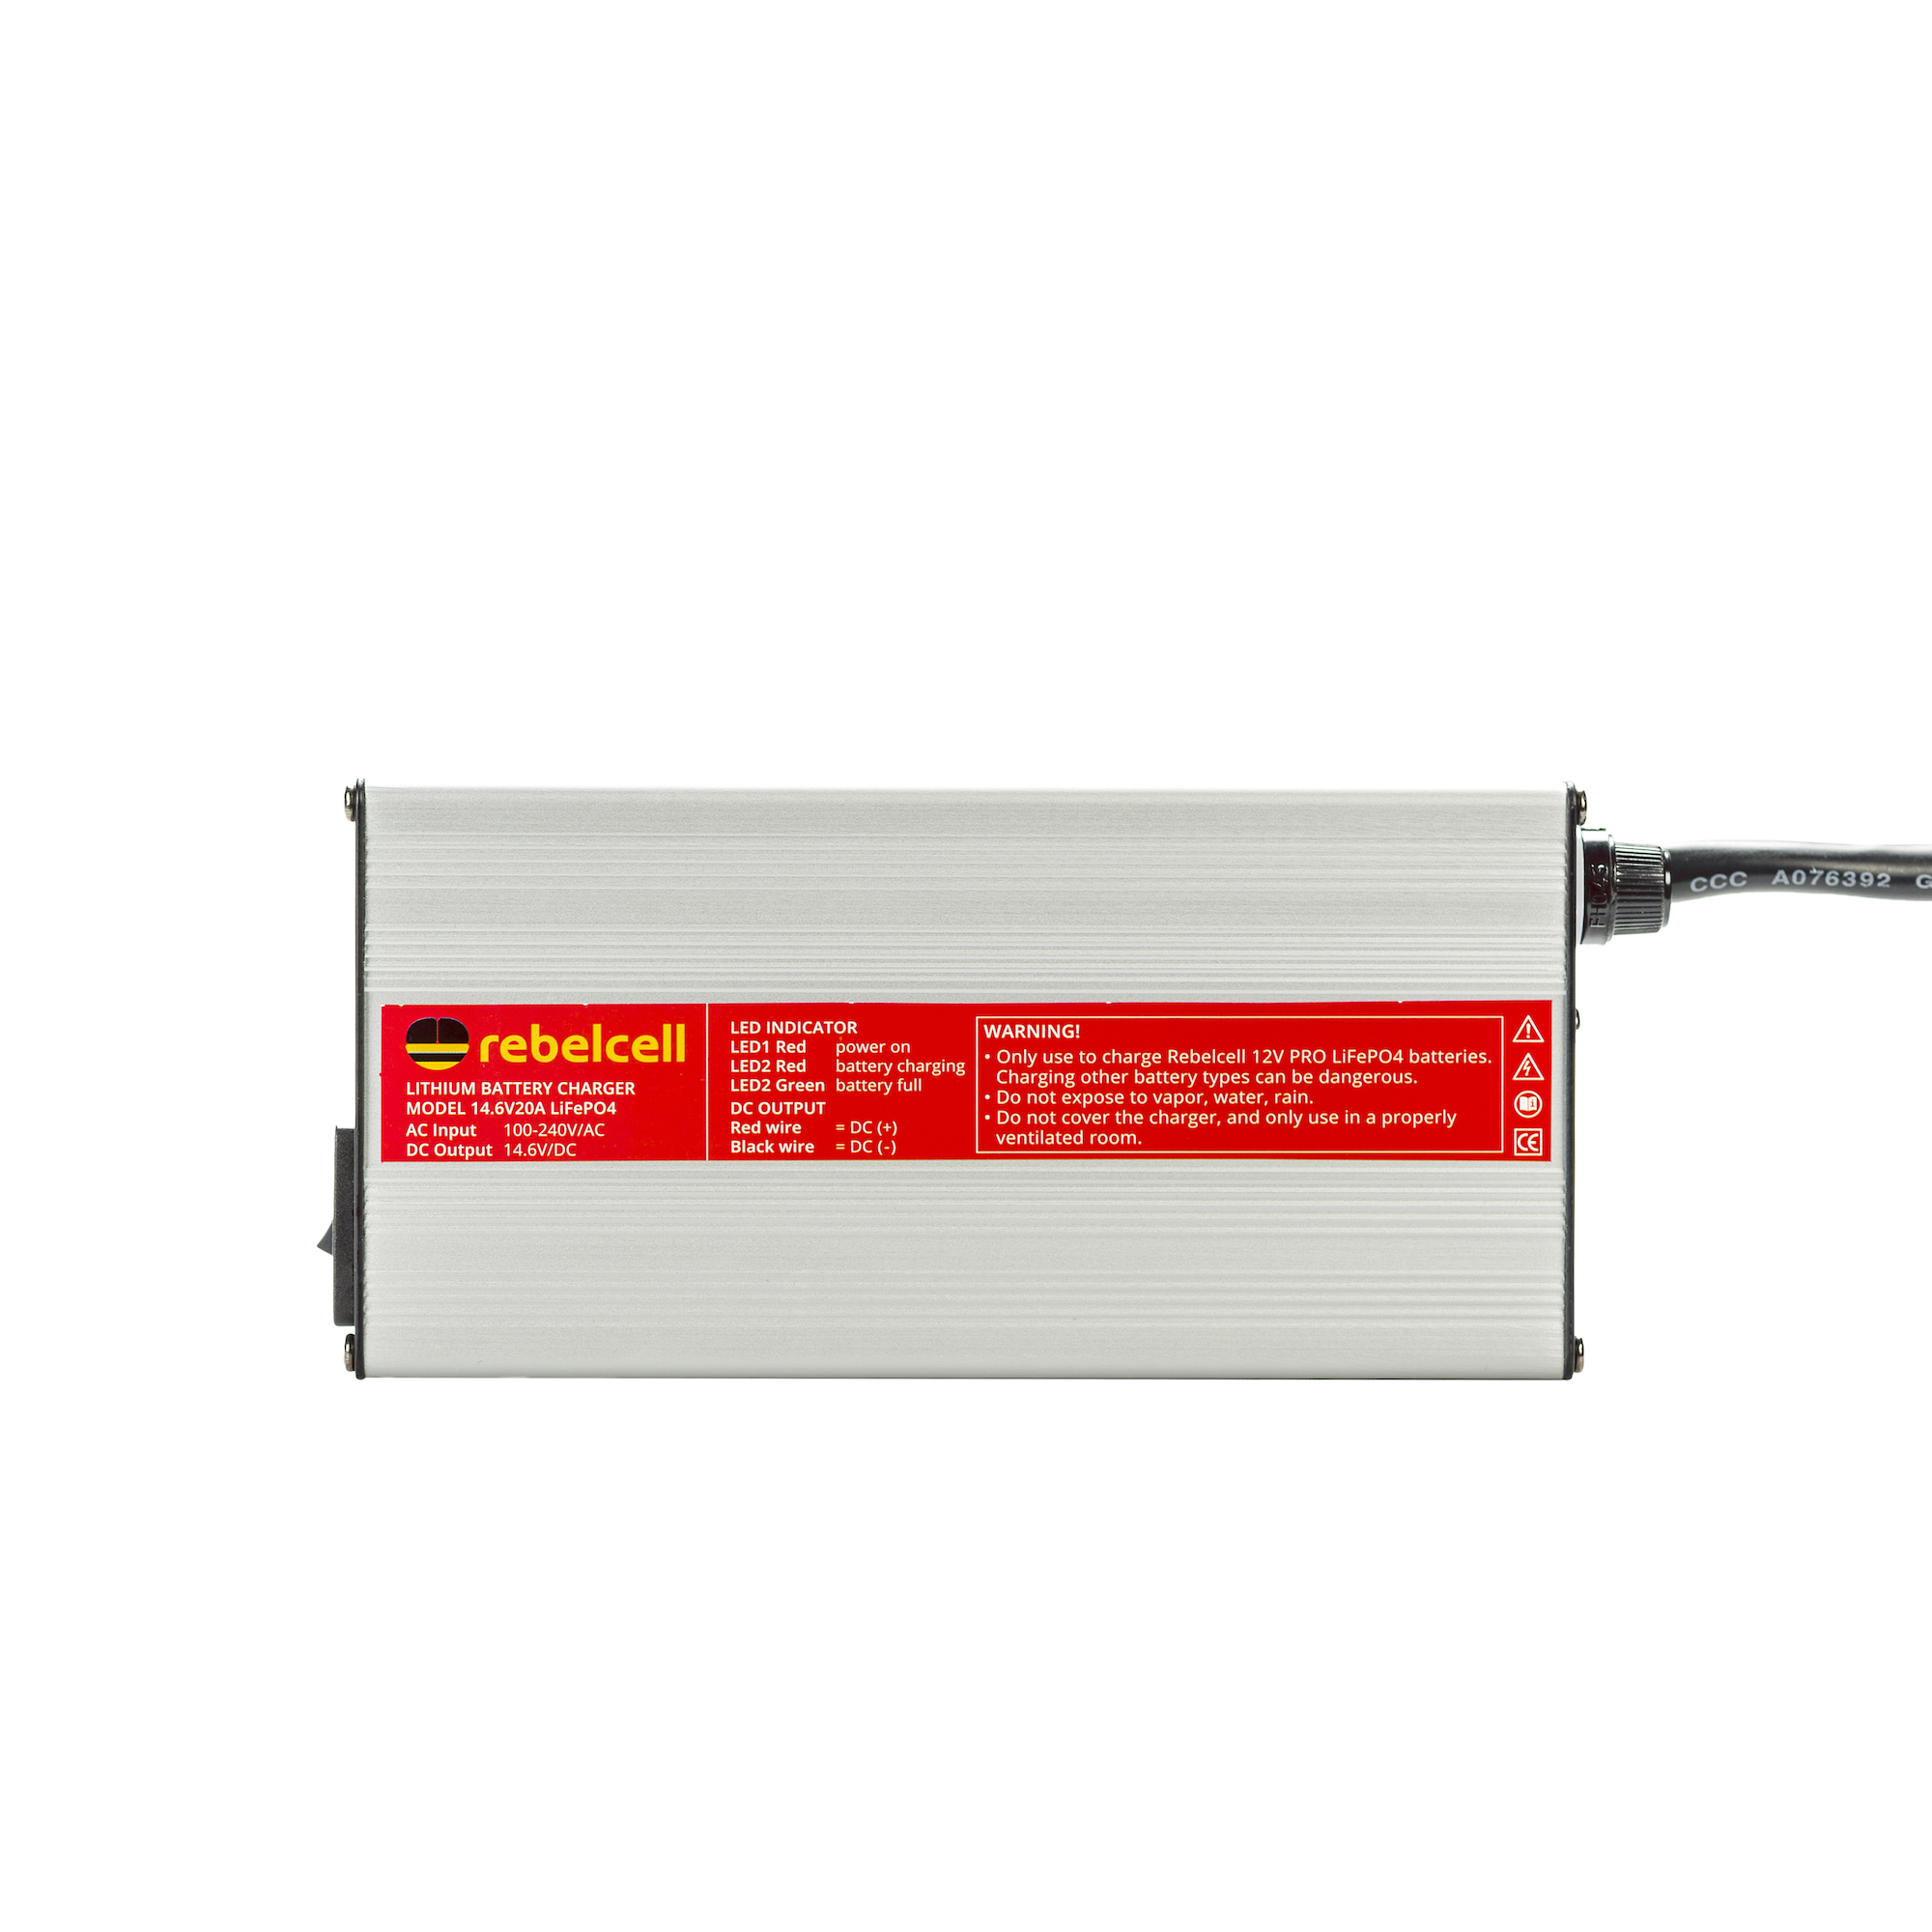 Chargeur de Batterie au Lithium 14,6V 20A POWER QUEEN pour Les Batteries  LiFePO4, LED pour Afficher l'Etat de Charge, Chargeur Batterie 12V avec 4